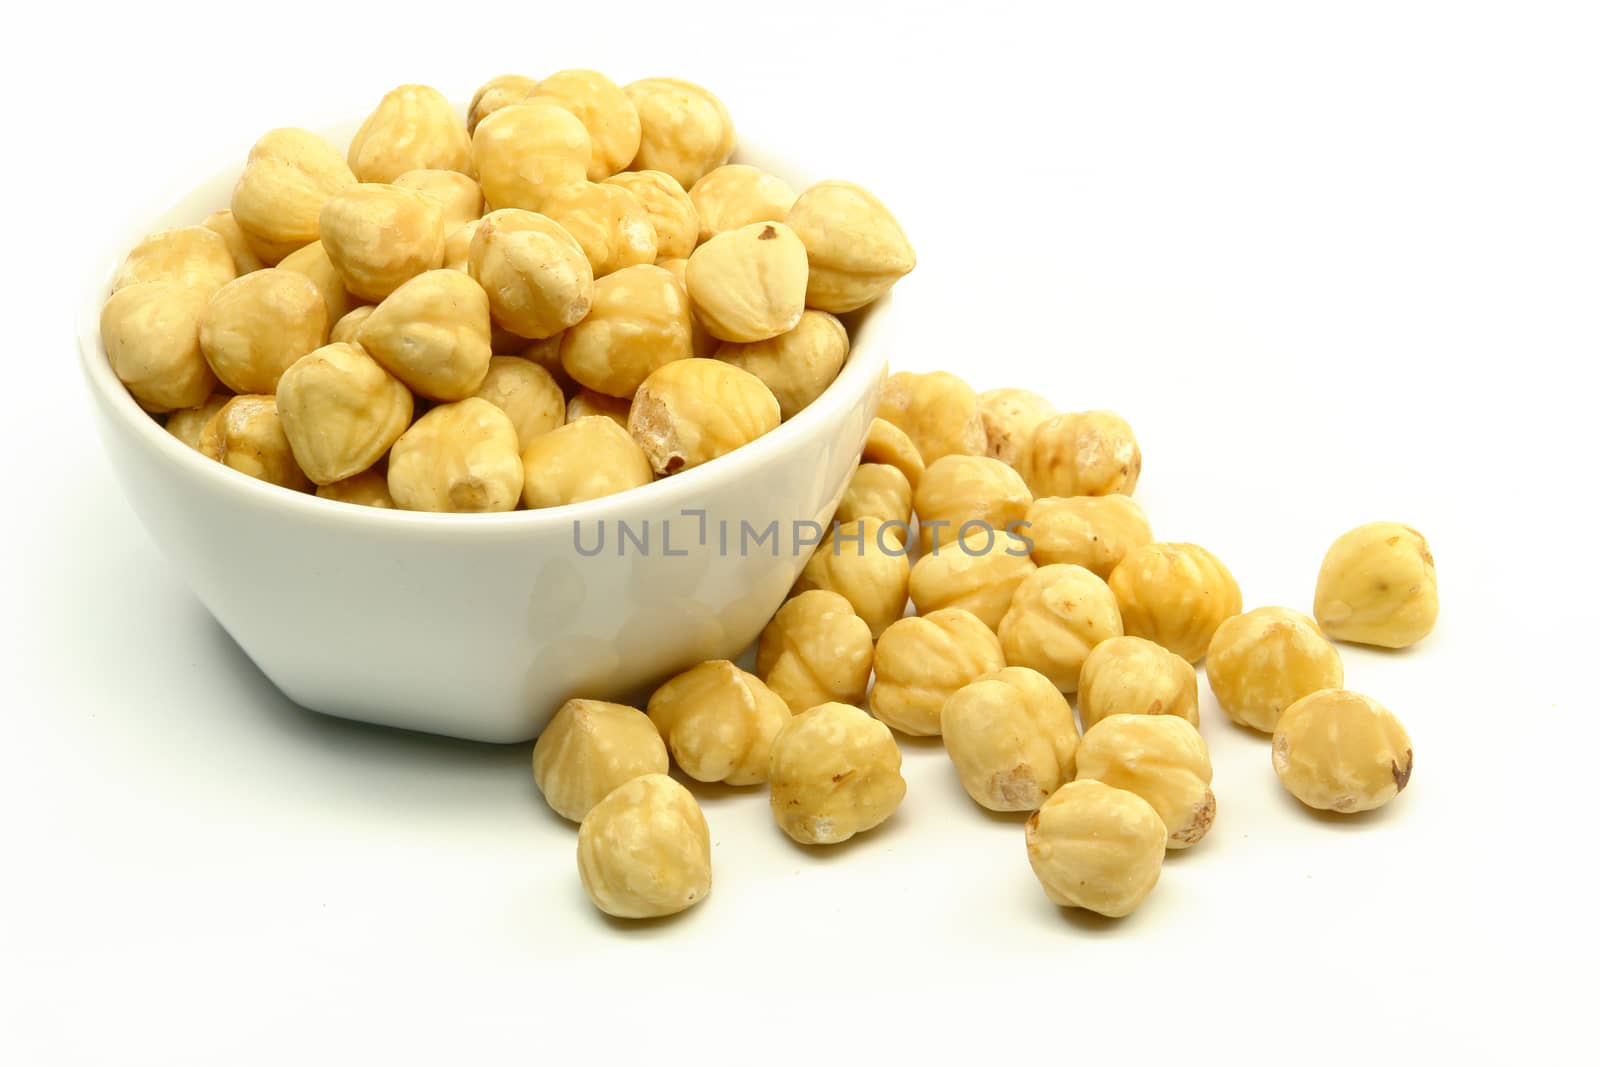 Hazelnuts in Bowl